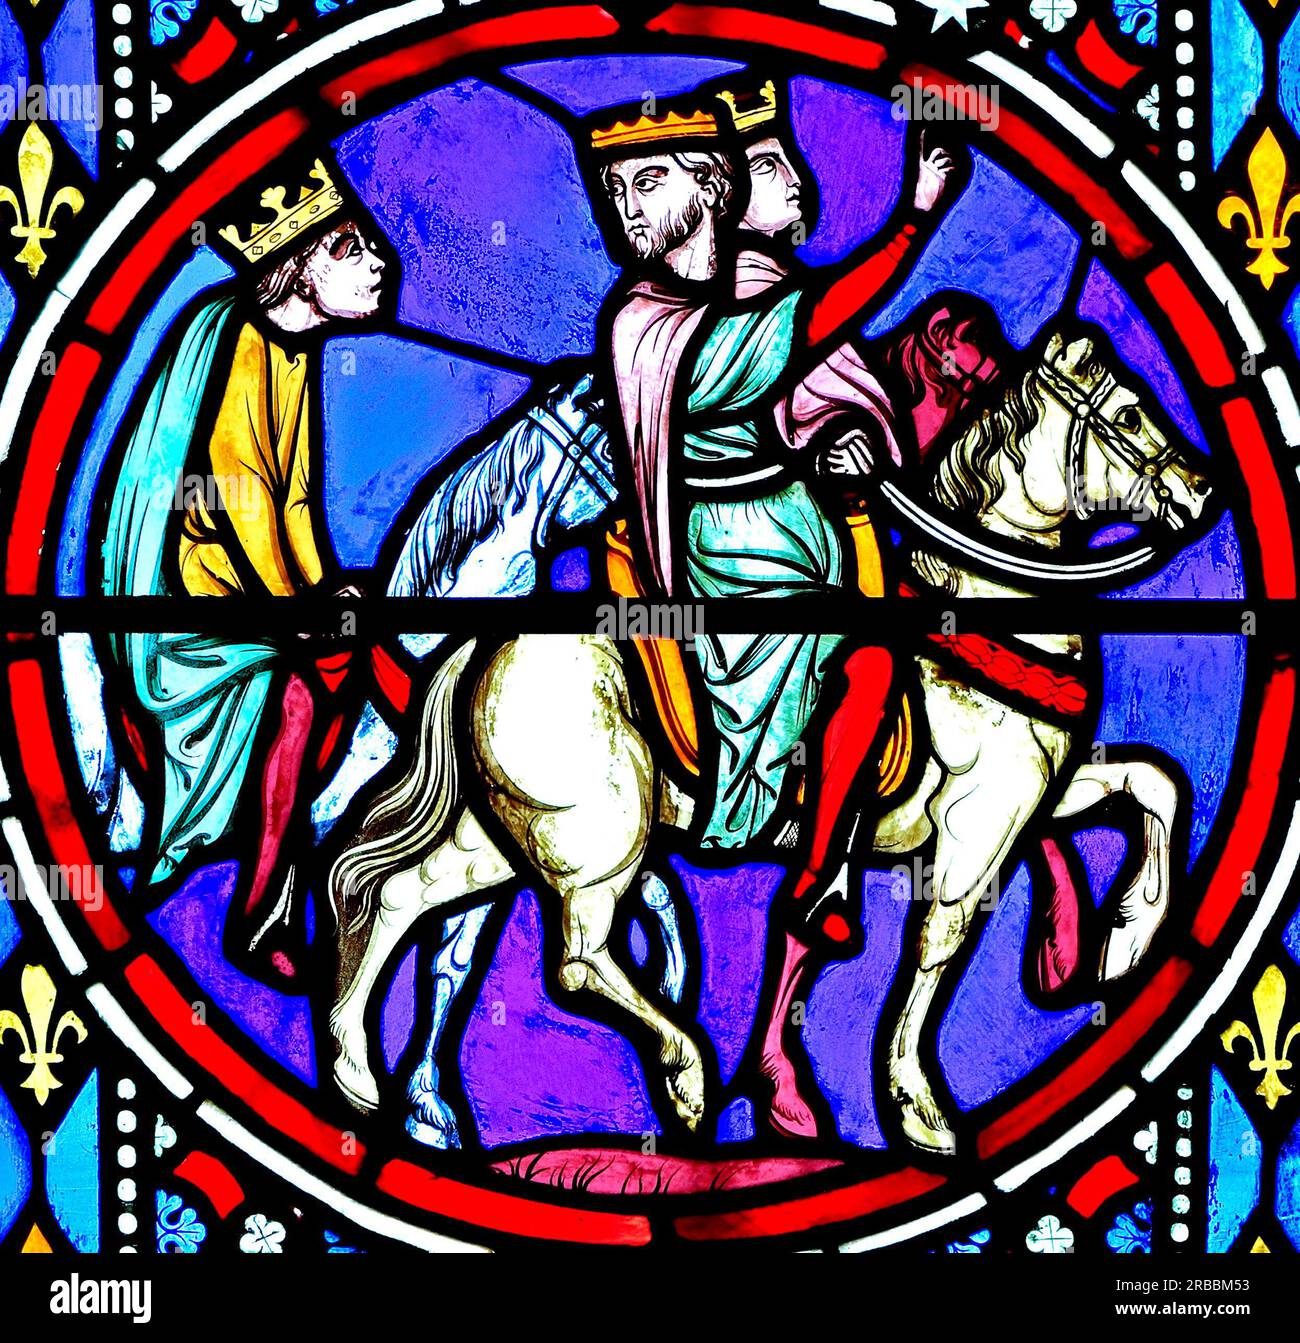 Finestra della Natività, vetrata colorata, di Oudinot di Parigi, 1861, Chiesa di Feltwell, Norfolk, The Magi, 3 tre re, viaggio per visitare Gesù nuovo nato Foto Stock